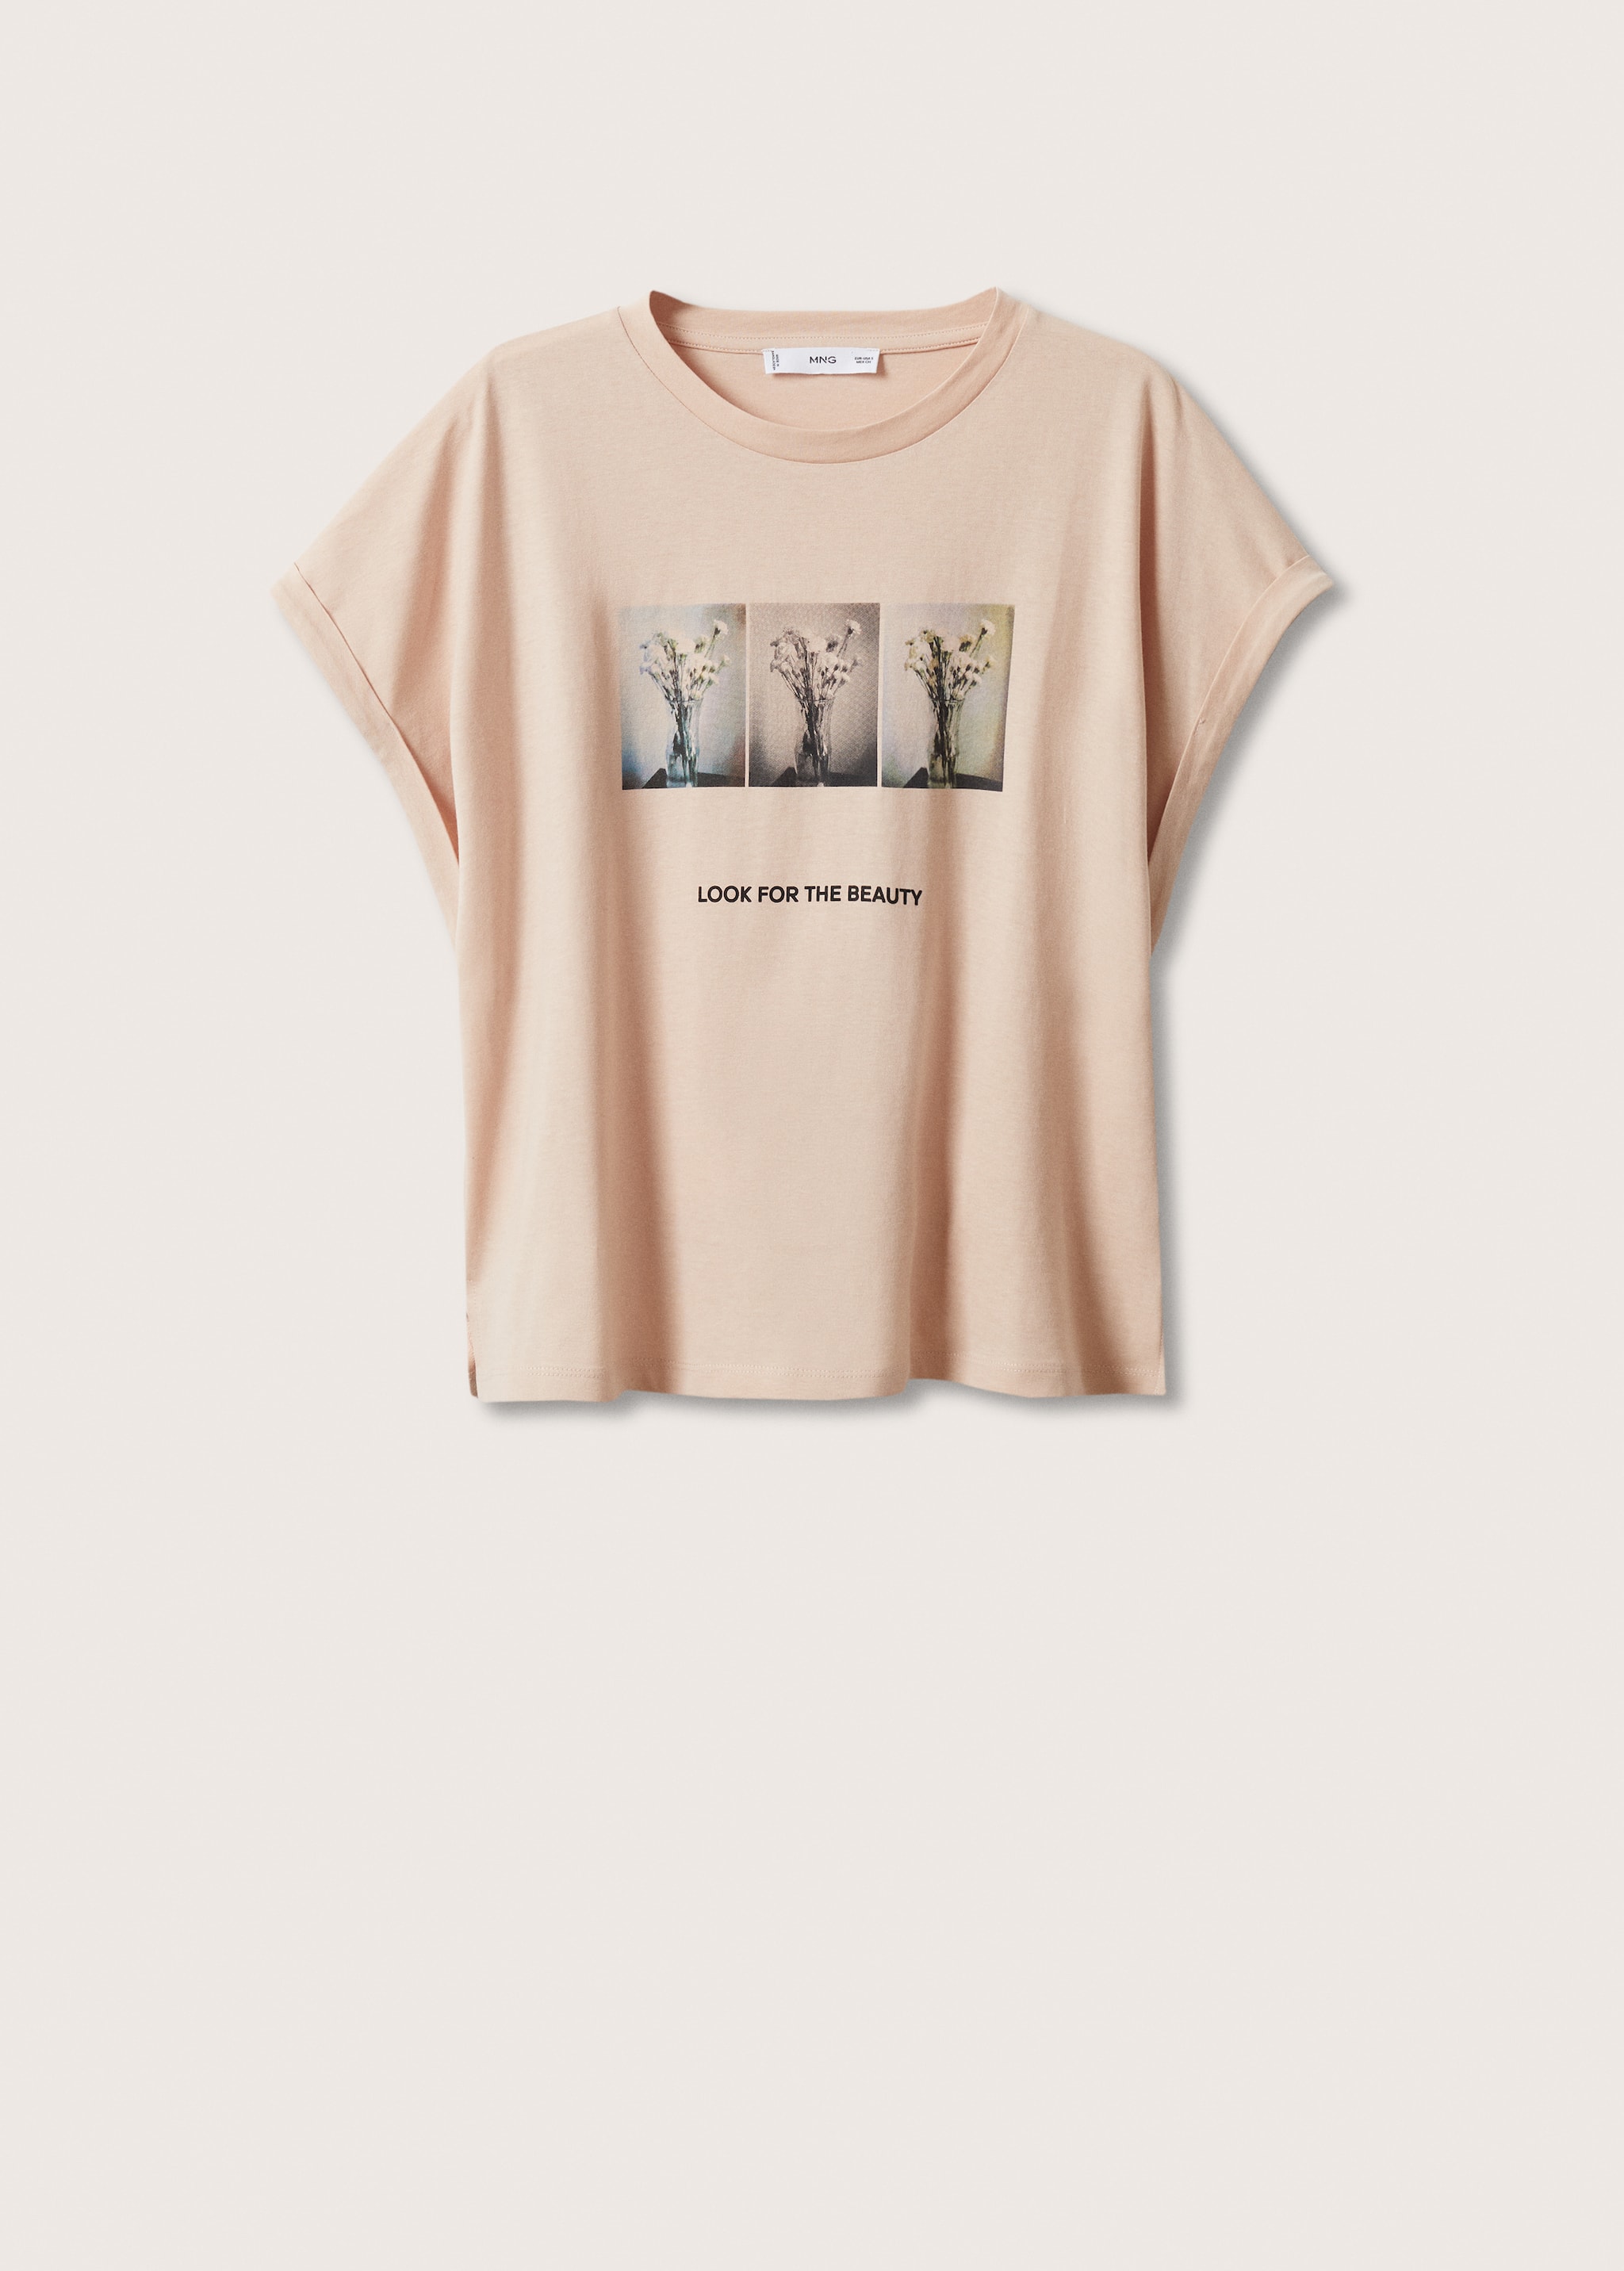 Camiseta algodón estampada - Artículo sin modelo